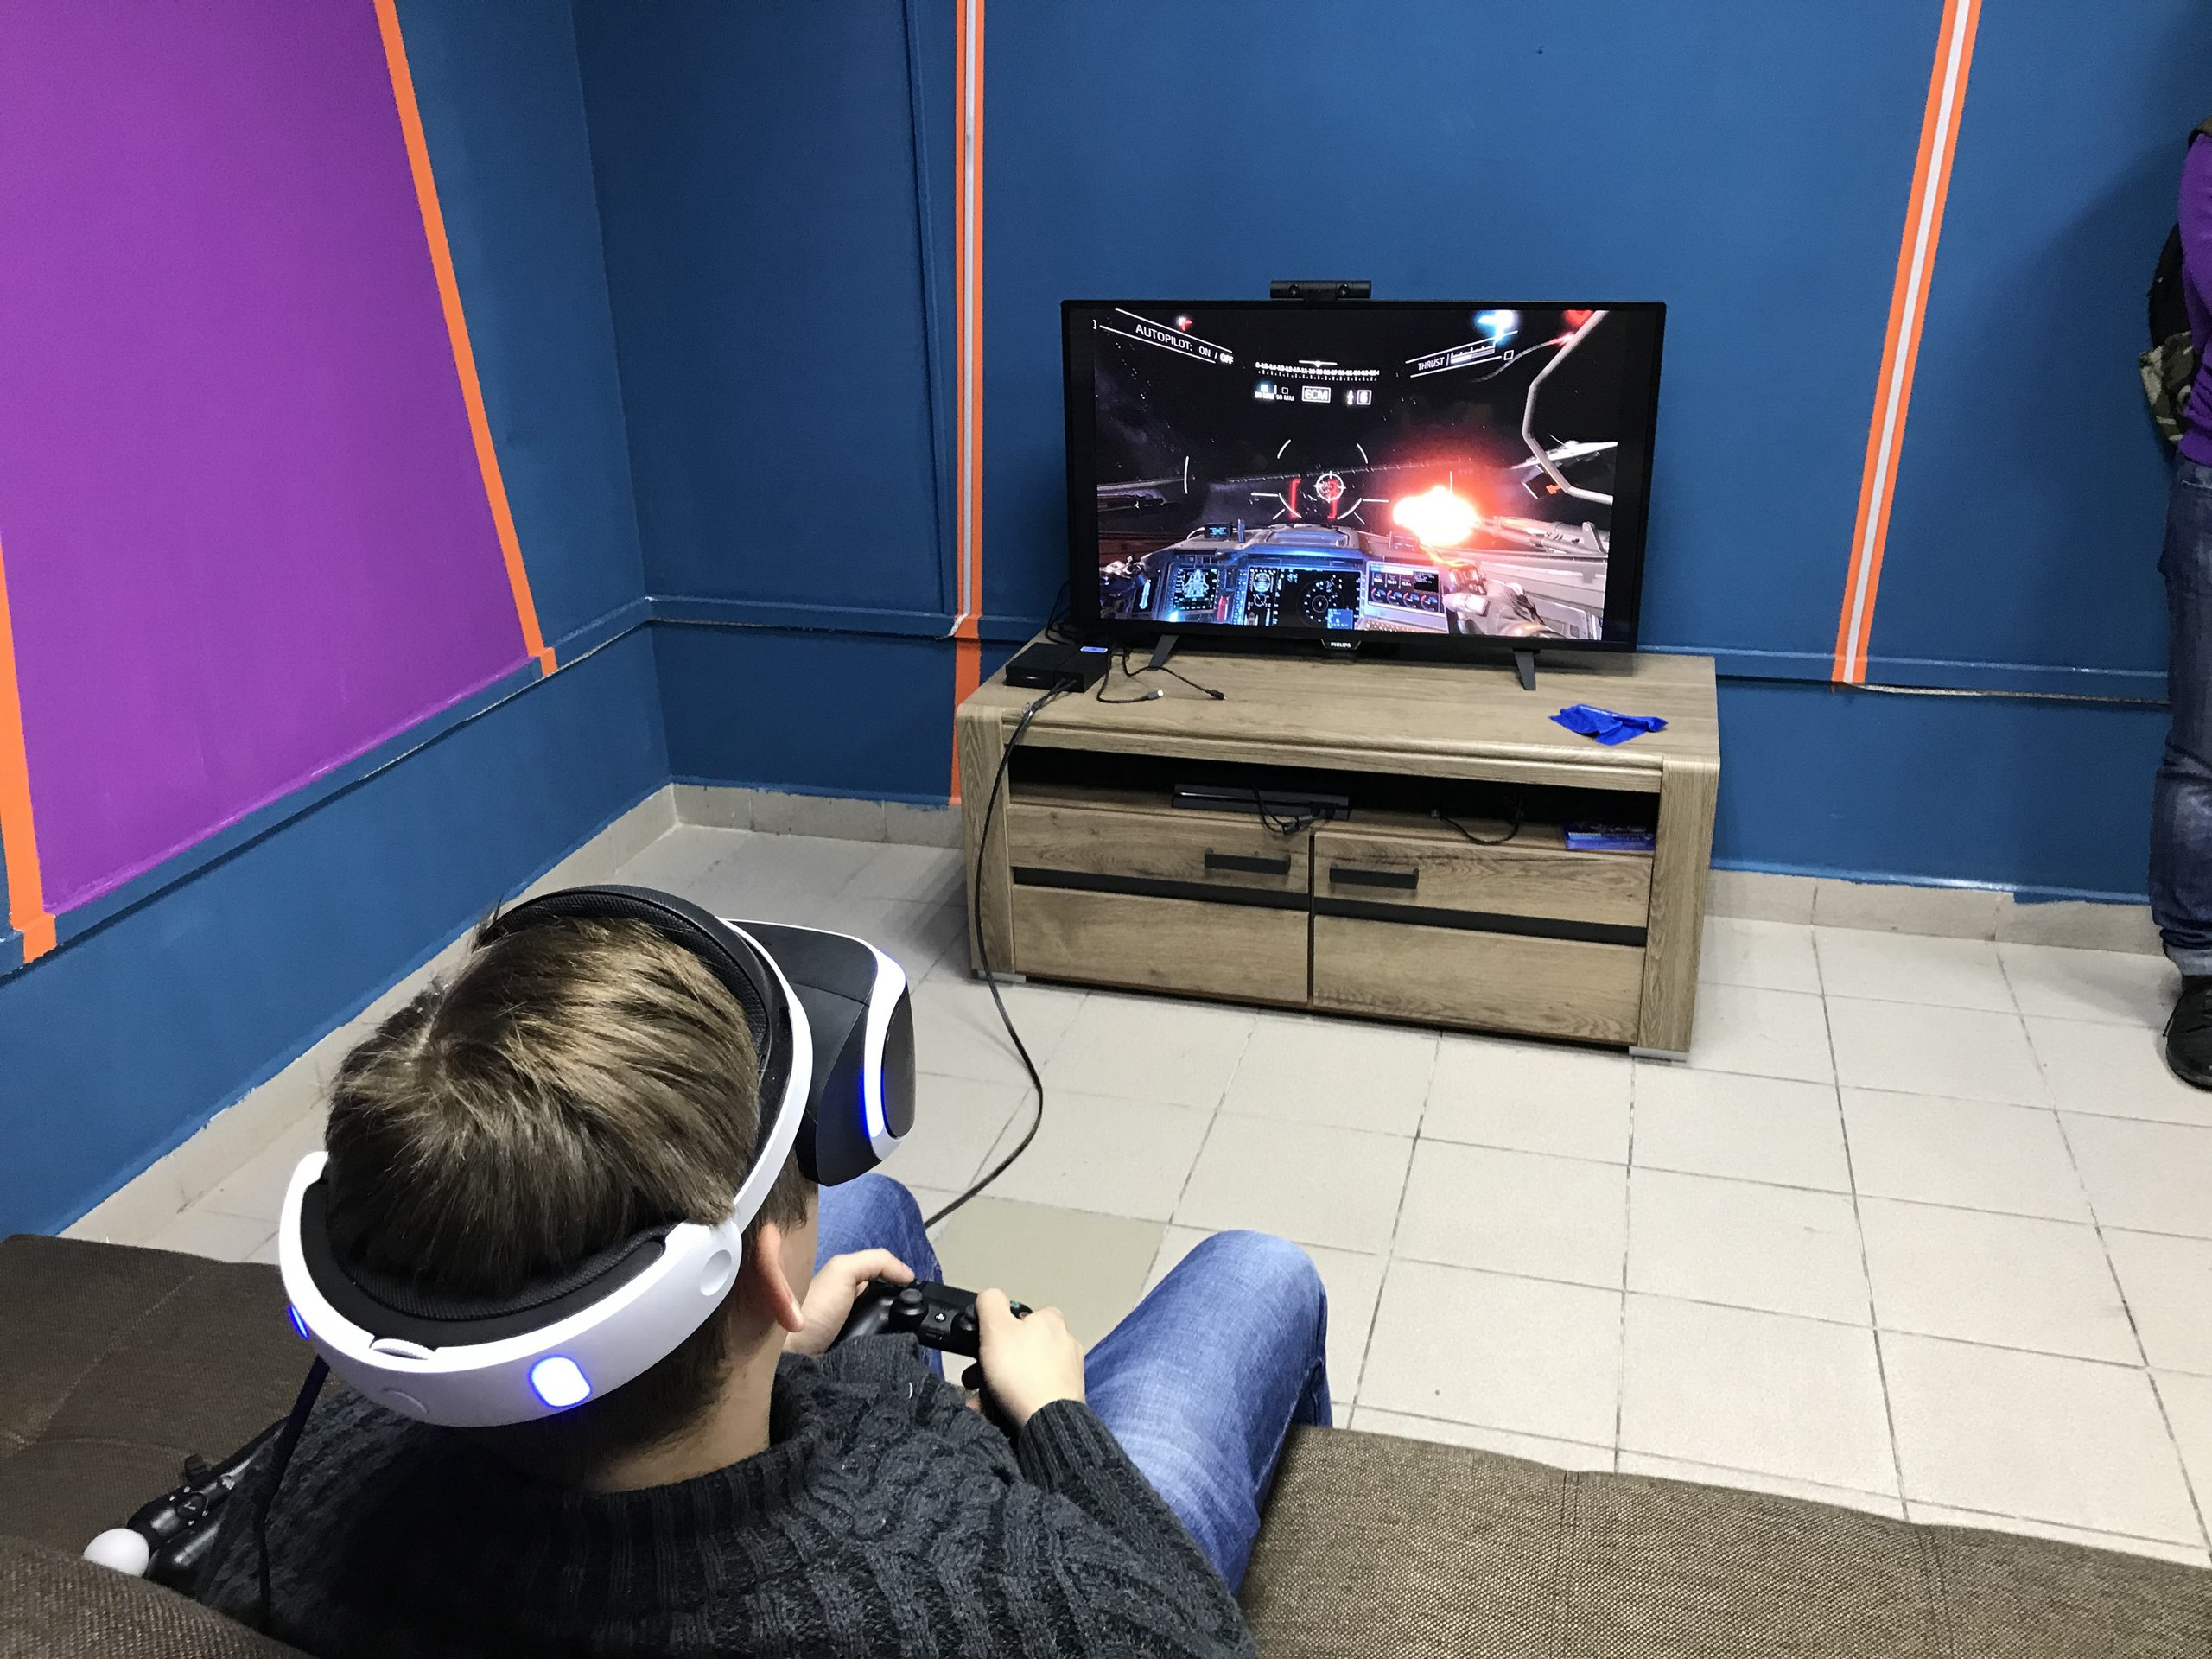 Поиграем в виртуальные игры. Сони плейстейшен ВР. Шлем плейстейшен VR. Игровой зал плейстейшен 4. VR очки Sony PLAYSTATION 4 игры.